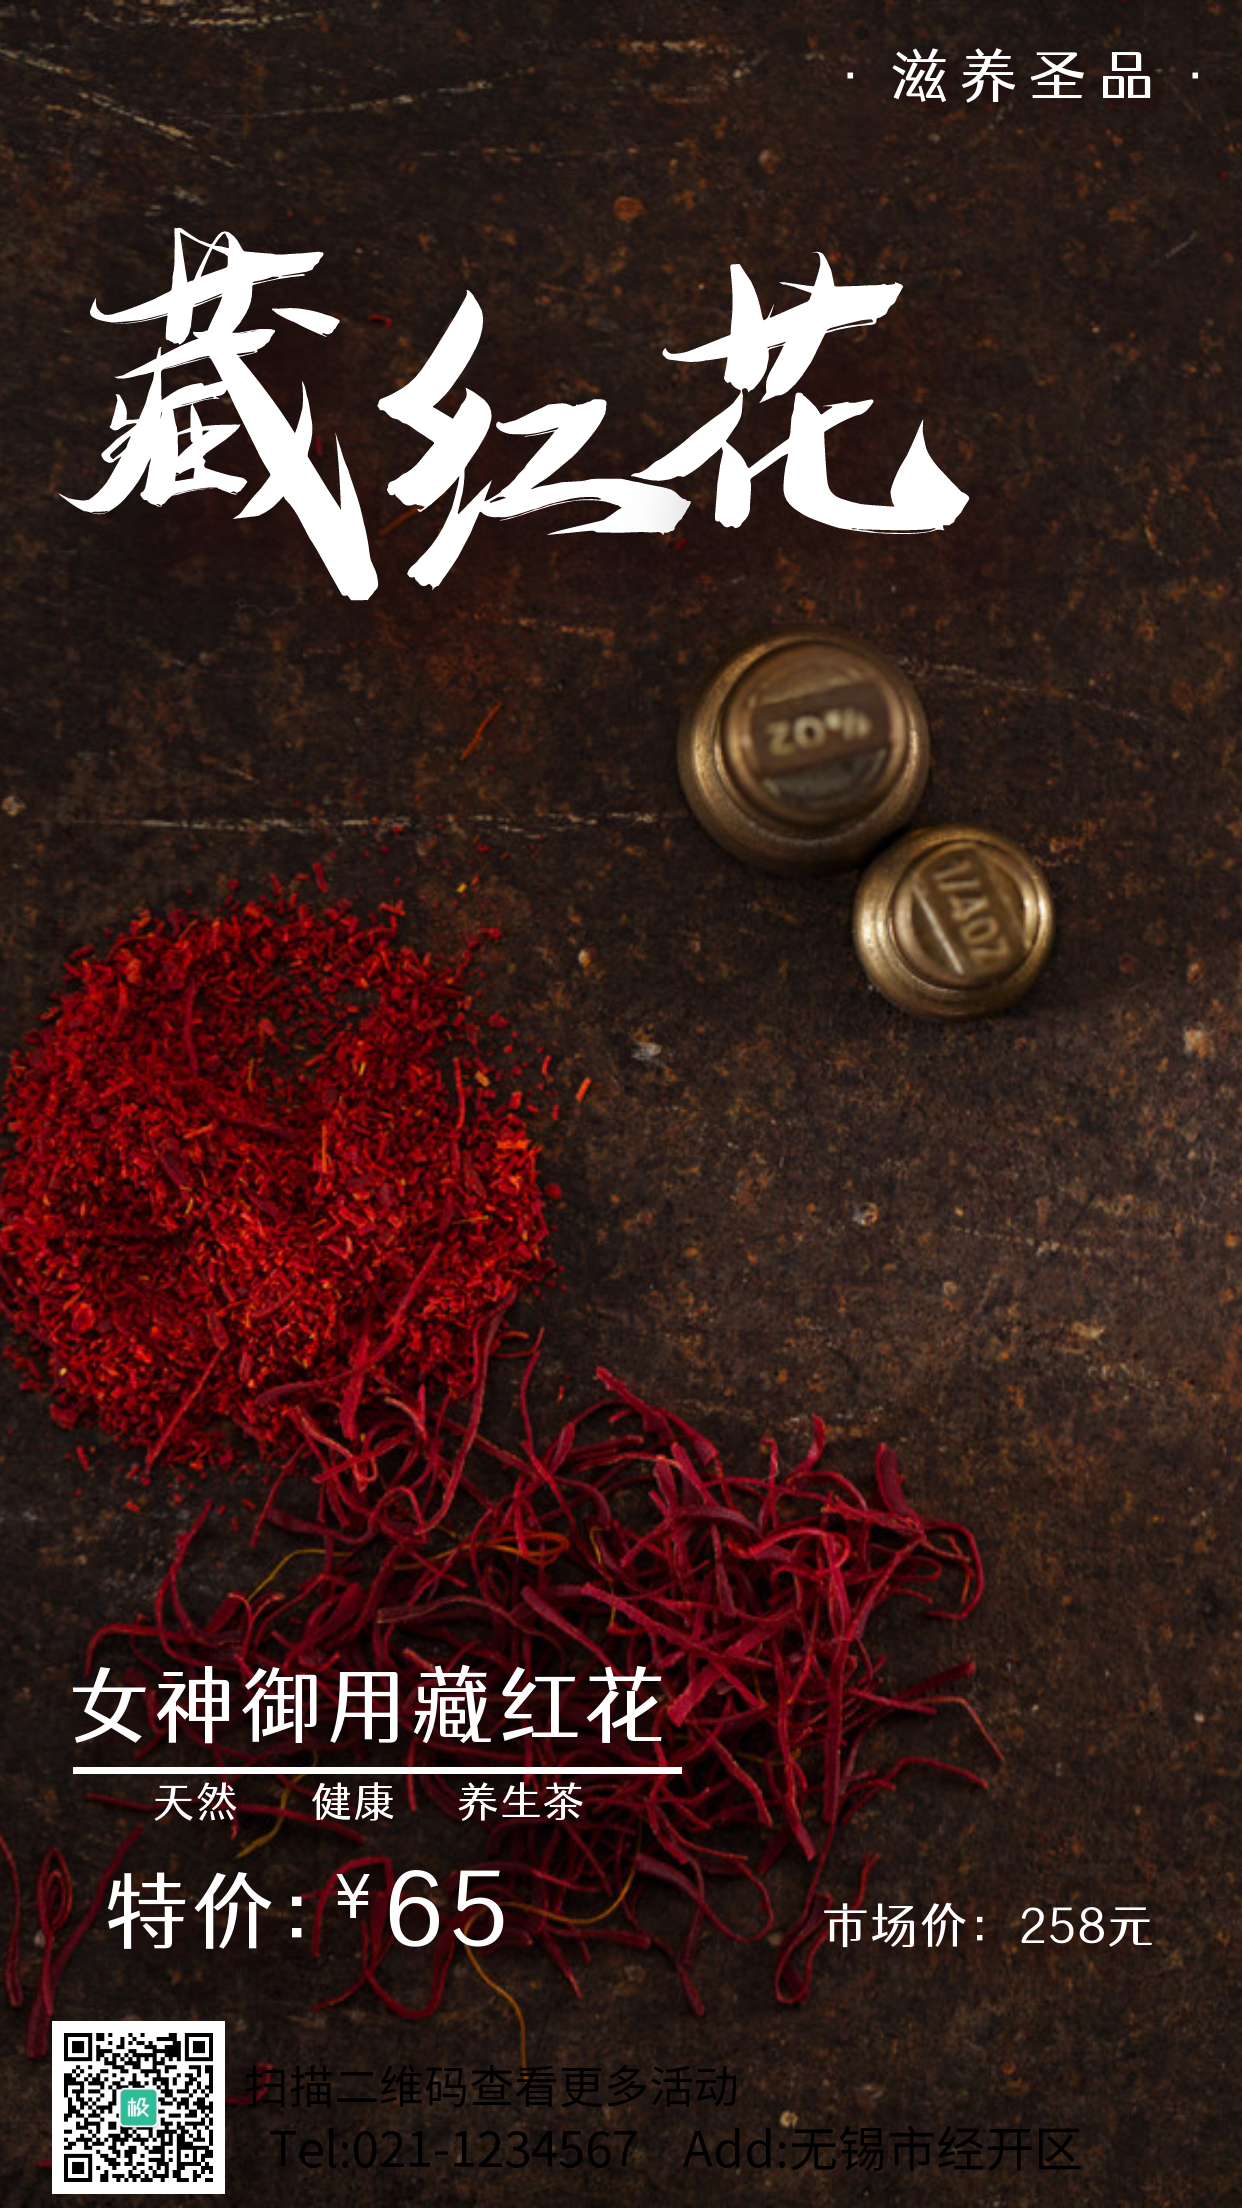 藏红花营销活动摄影图手机海报